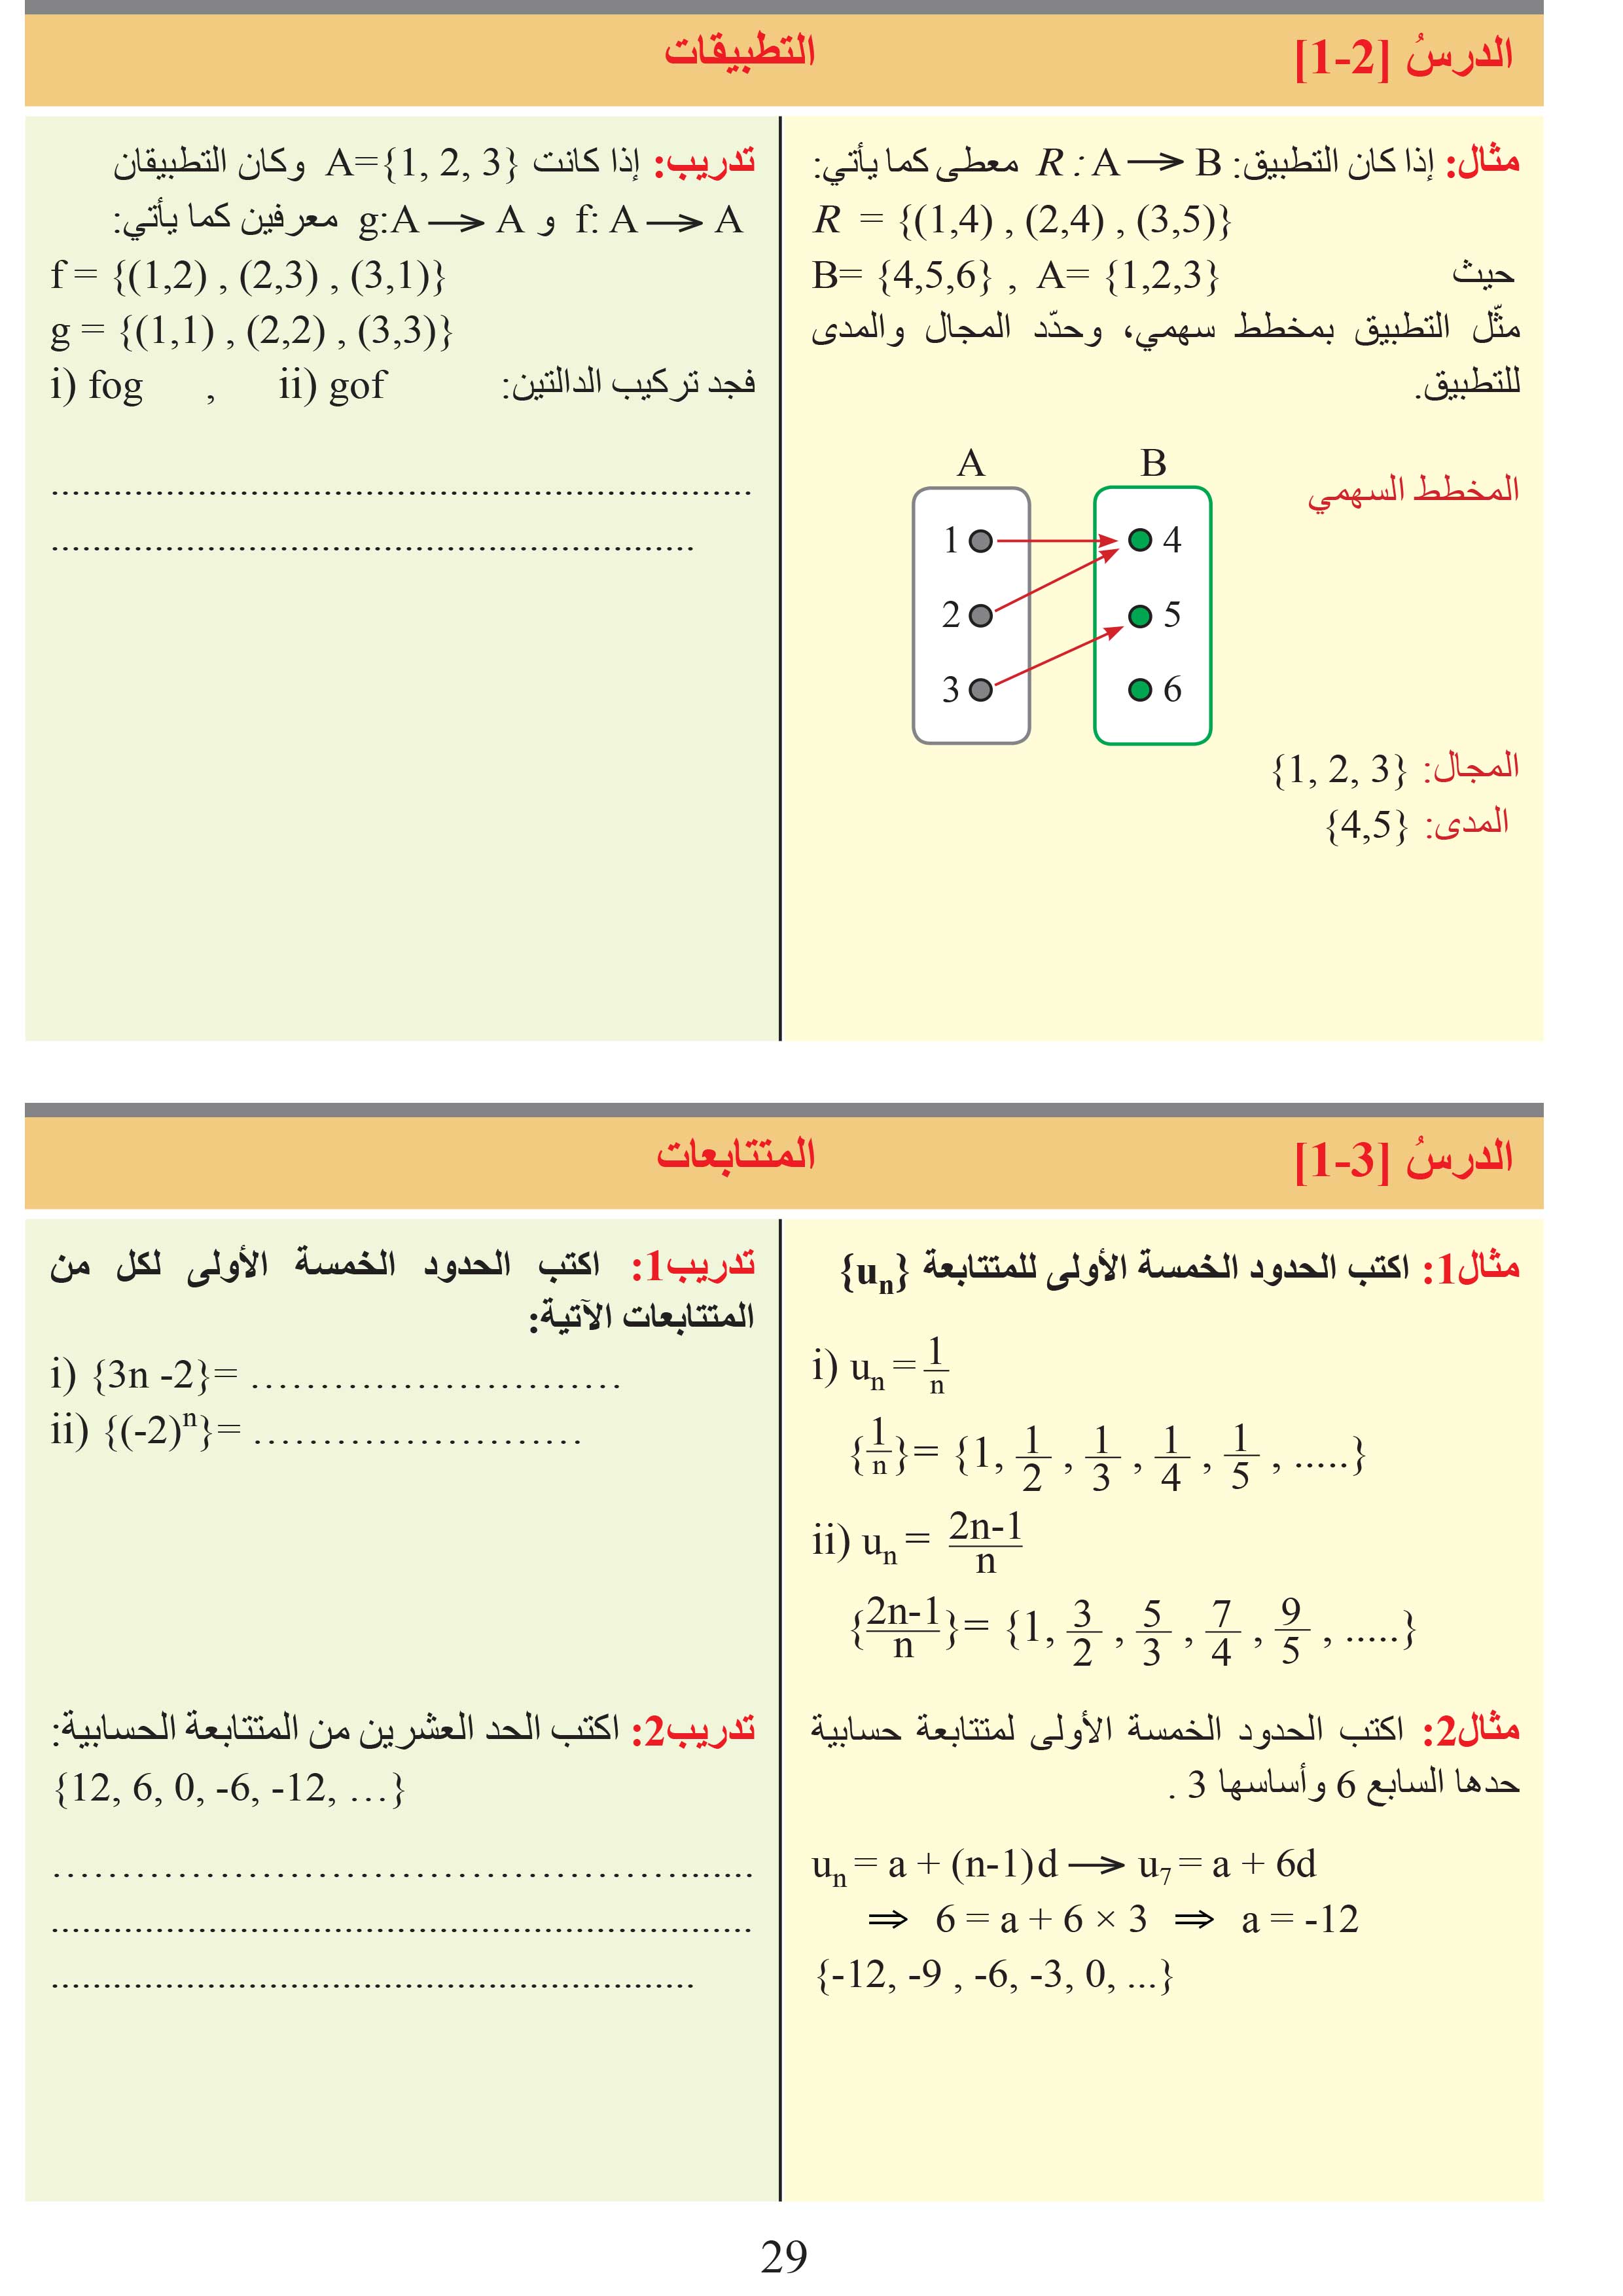 الدرس6-1: خطة حل المسألة (إفهم المسألة)